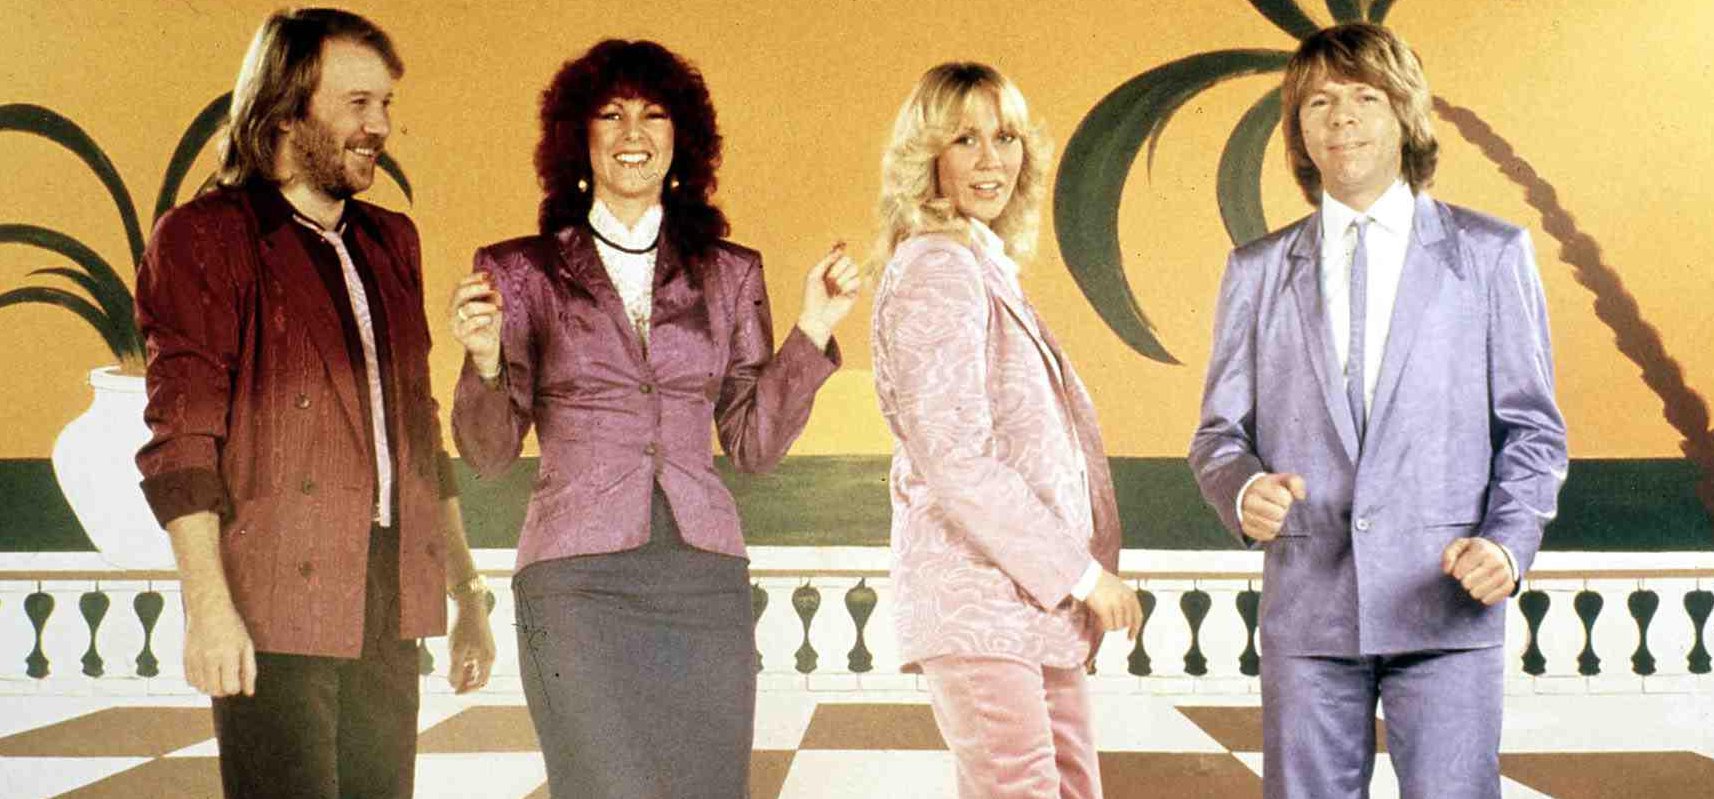 Így néznek ki a legendás ABBA tagjai, akik több évtized után új albummal jelentkeznek - fotó